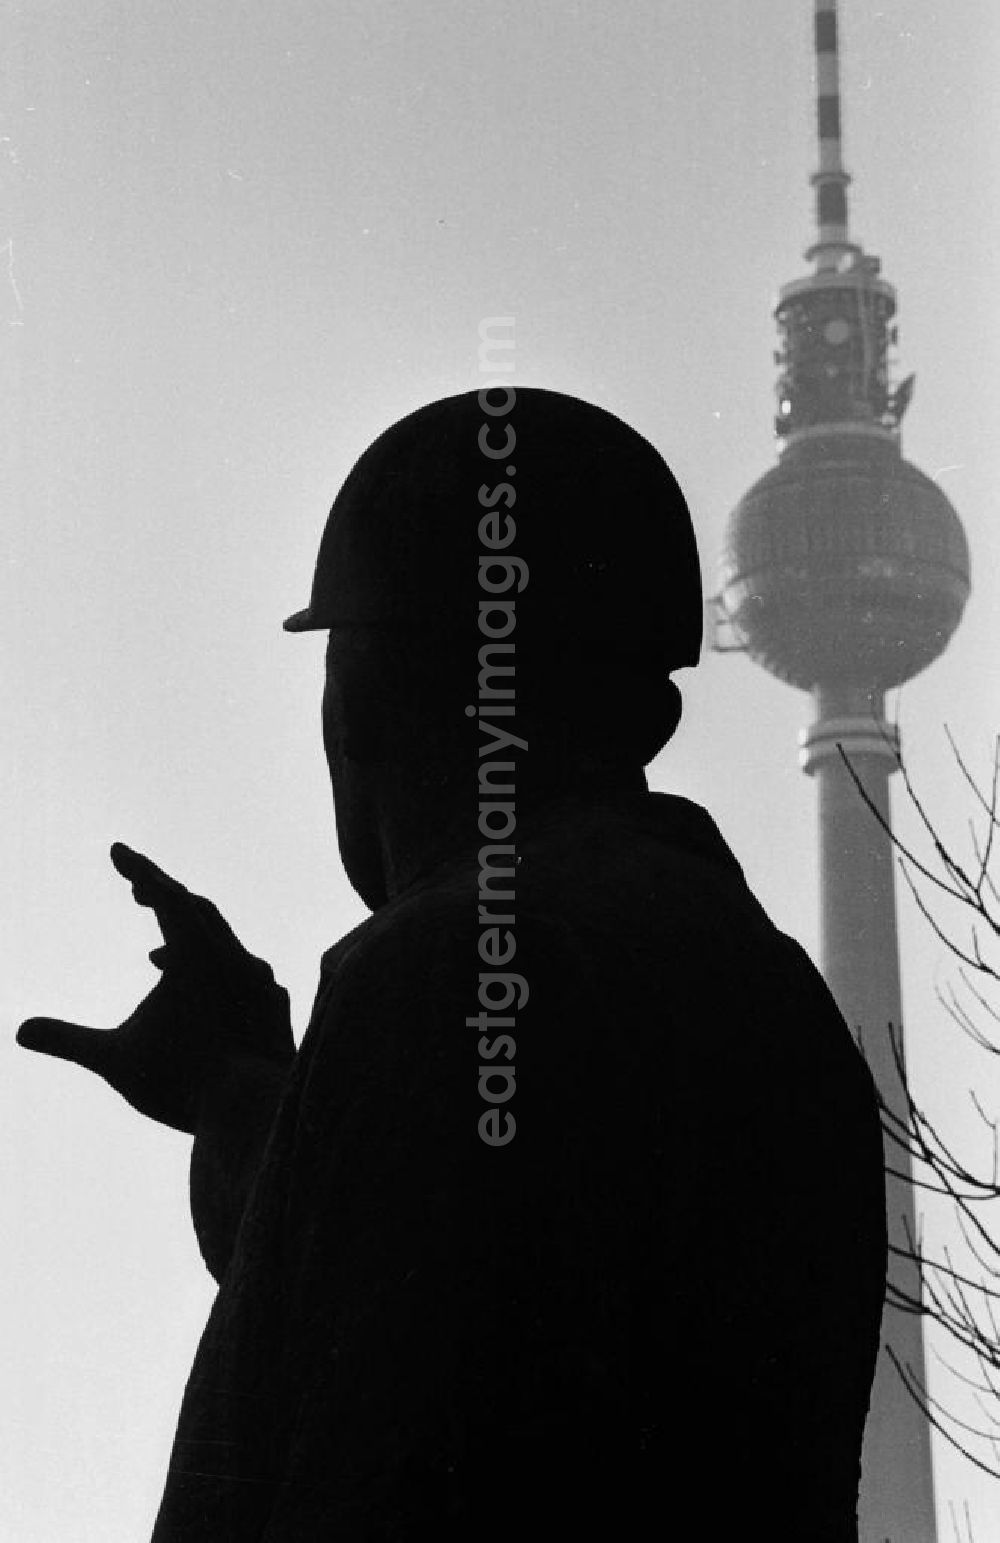 GDR photo archive: Berlin - Bauarbeiterdenkmal in Berlin mit dem Berliner Fernsehturm im Hintergrund.